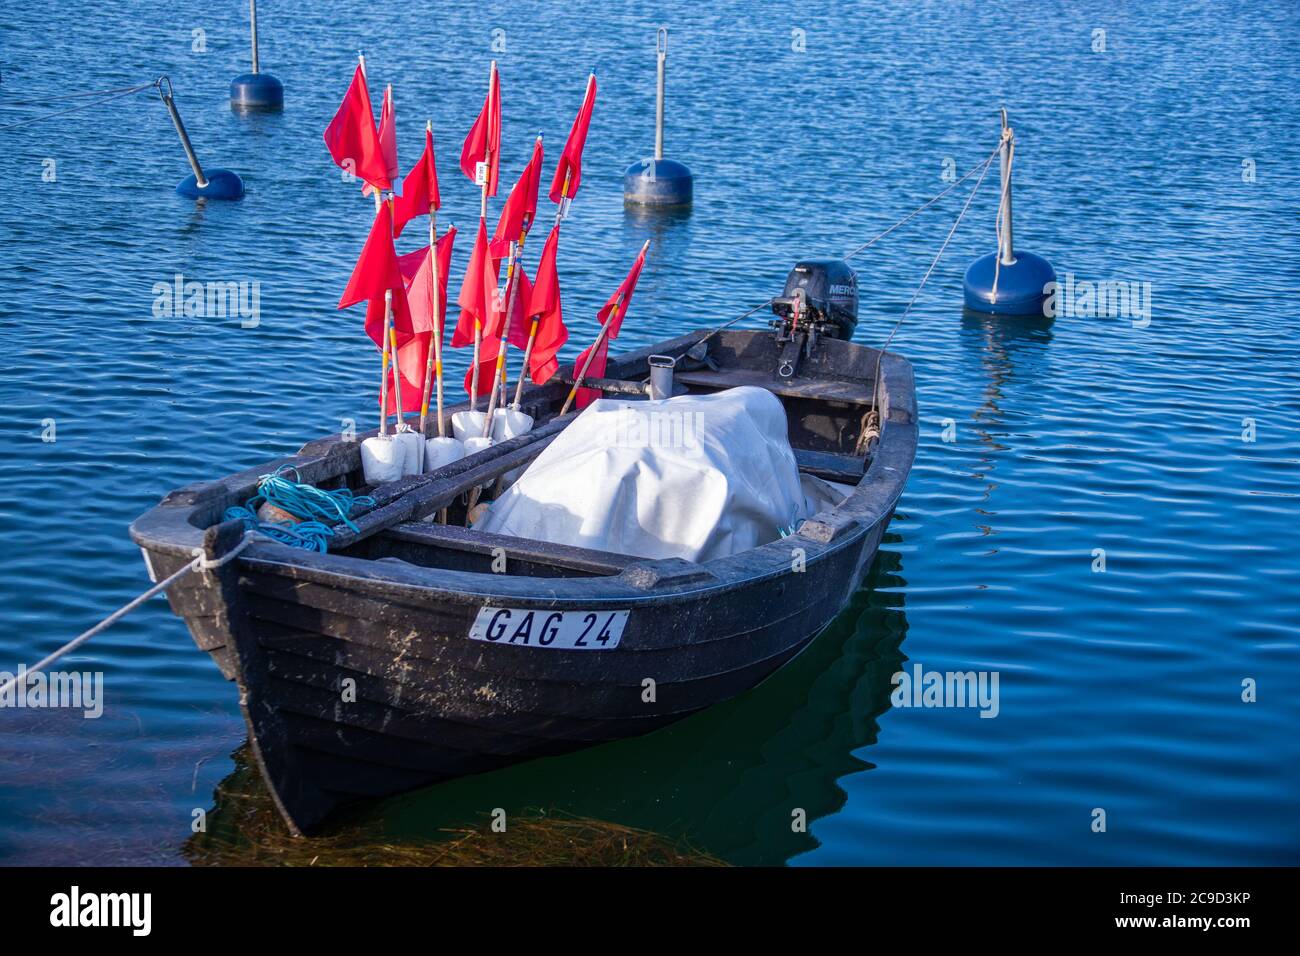 Gager, Deutschland. Mai 2020. Im kleinen Hafen von Gager befindet sich ein kleines Fischerboot mit Fahnenmasten zur Markierung der Kiemen. Quelle: Jens Büttner/dpa-Zentralbild/ZB/dpa/Alamy Live News Stockfoto